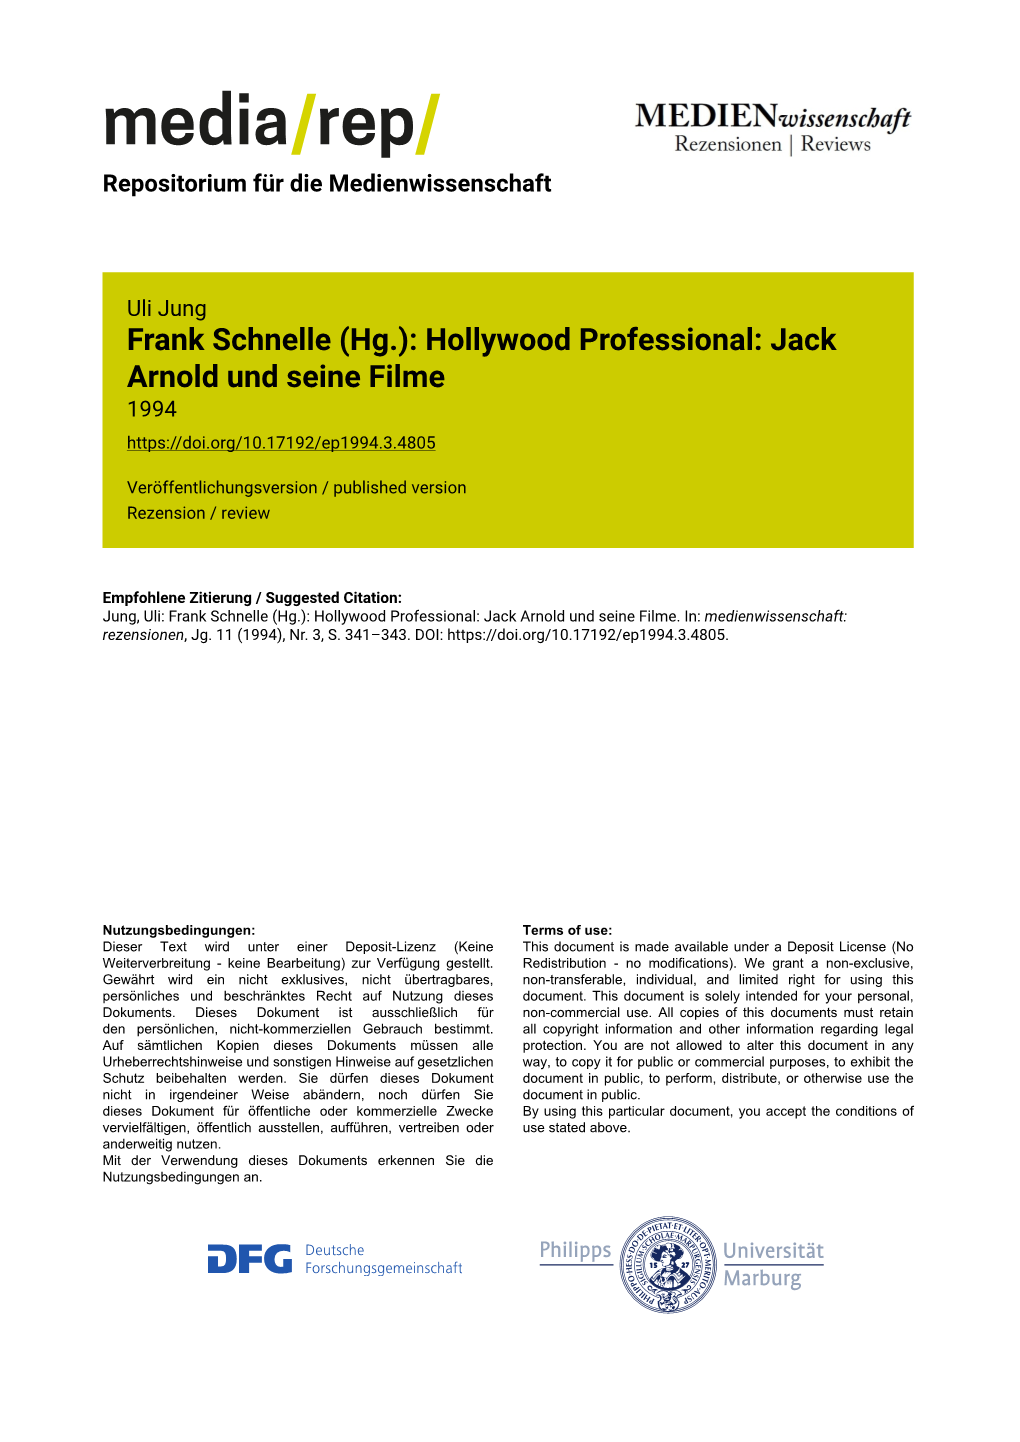 Frank Schnelle (Hg.): Hollywood Professional: Jack Arnold Und Seine Filme 1994